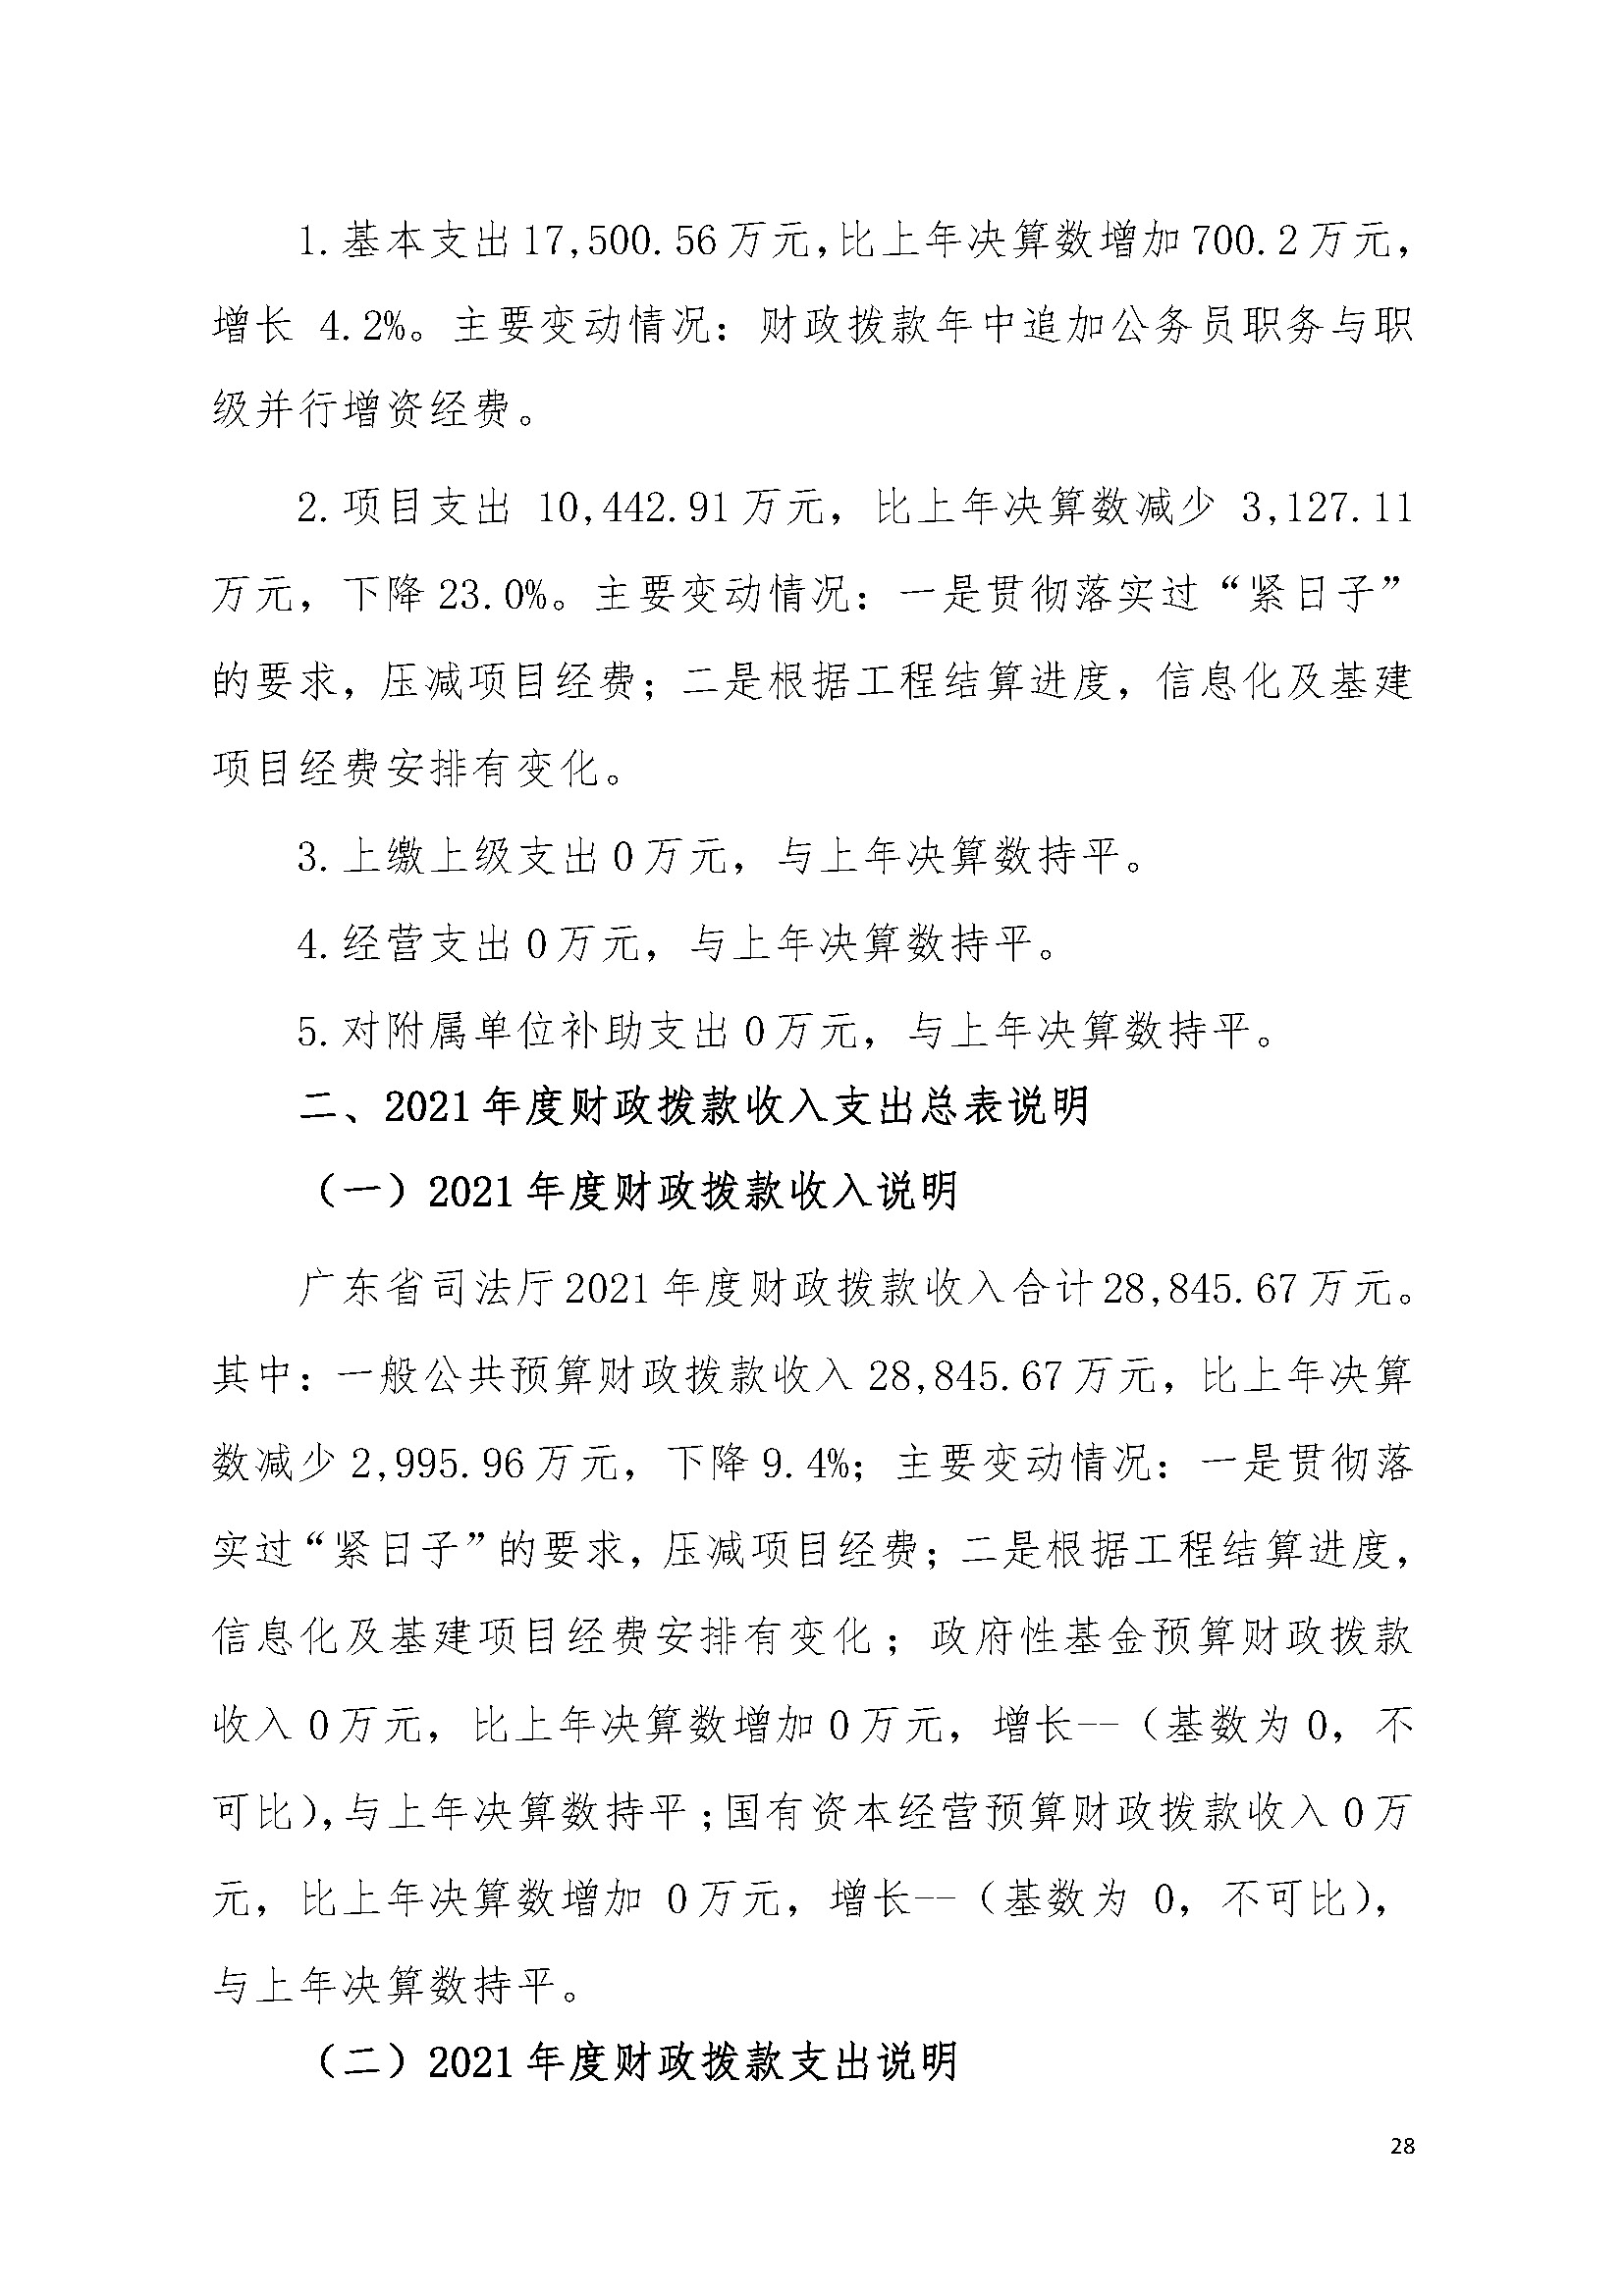 2021年广东省司法厅部门决算 _页面_28.jpg